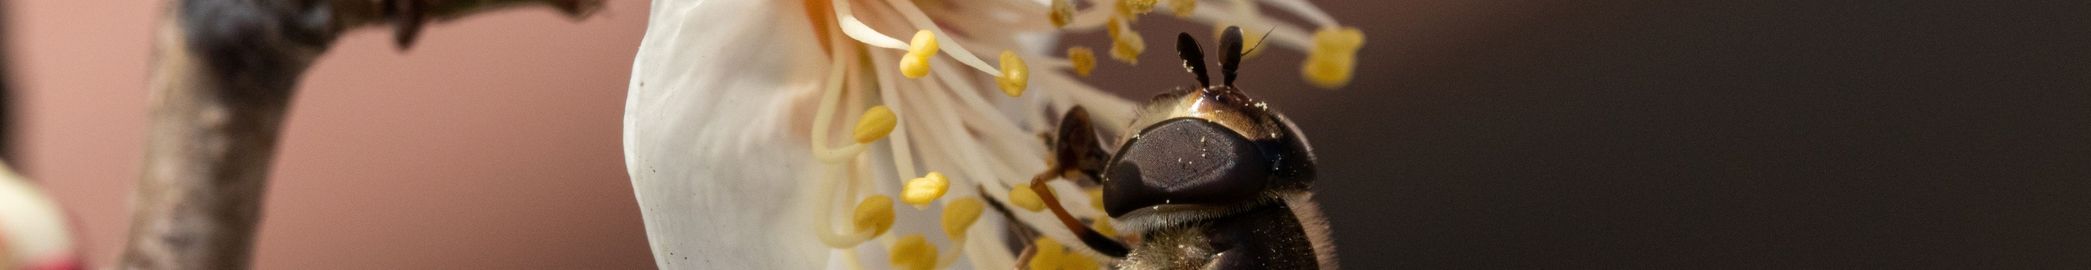 HEADER für WIR ÜBER UNS Biene auf Blüte © HeungSoon auf Pixabay